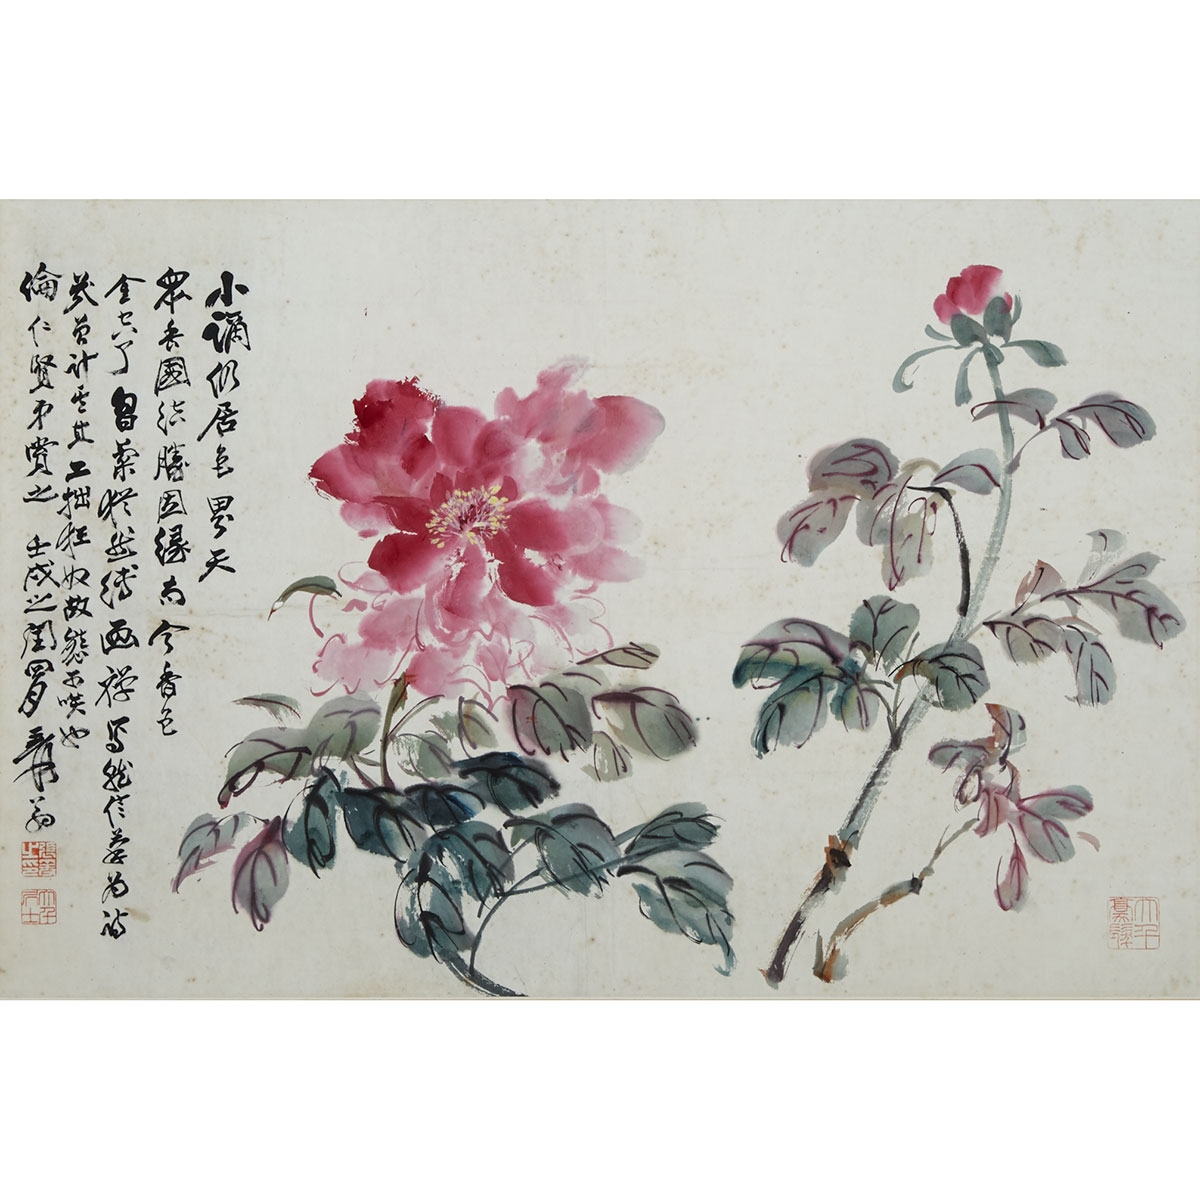 Attributed to Zhang Daqian (1899-1983)